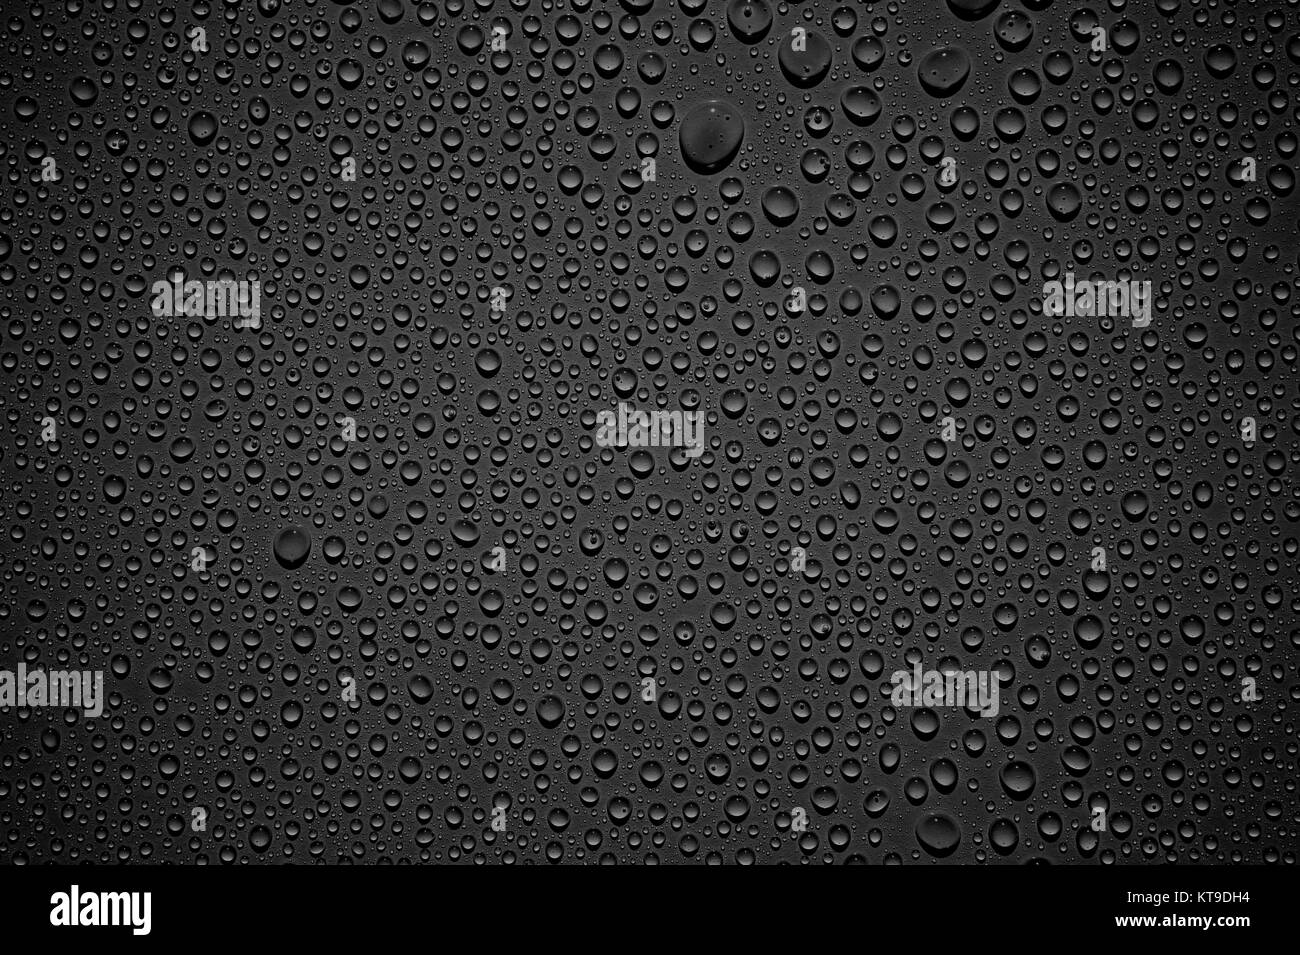 Schwarzer dunkler Hintergrund mit glänzenden frischen Wassertropfen Stock Photo